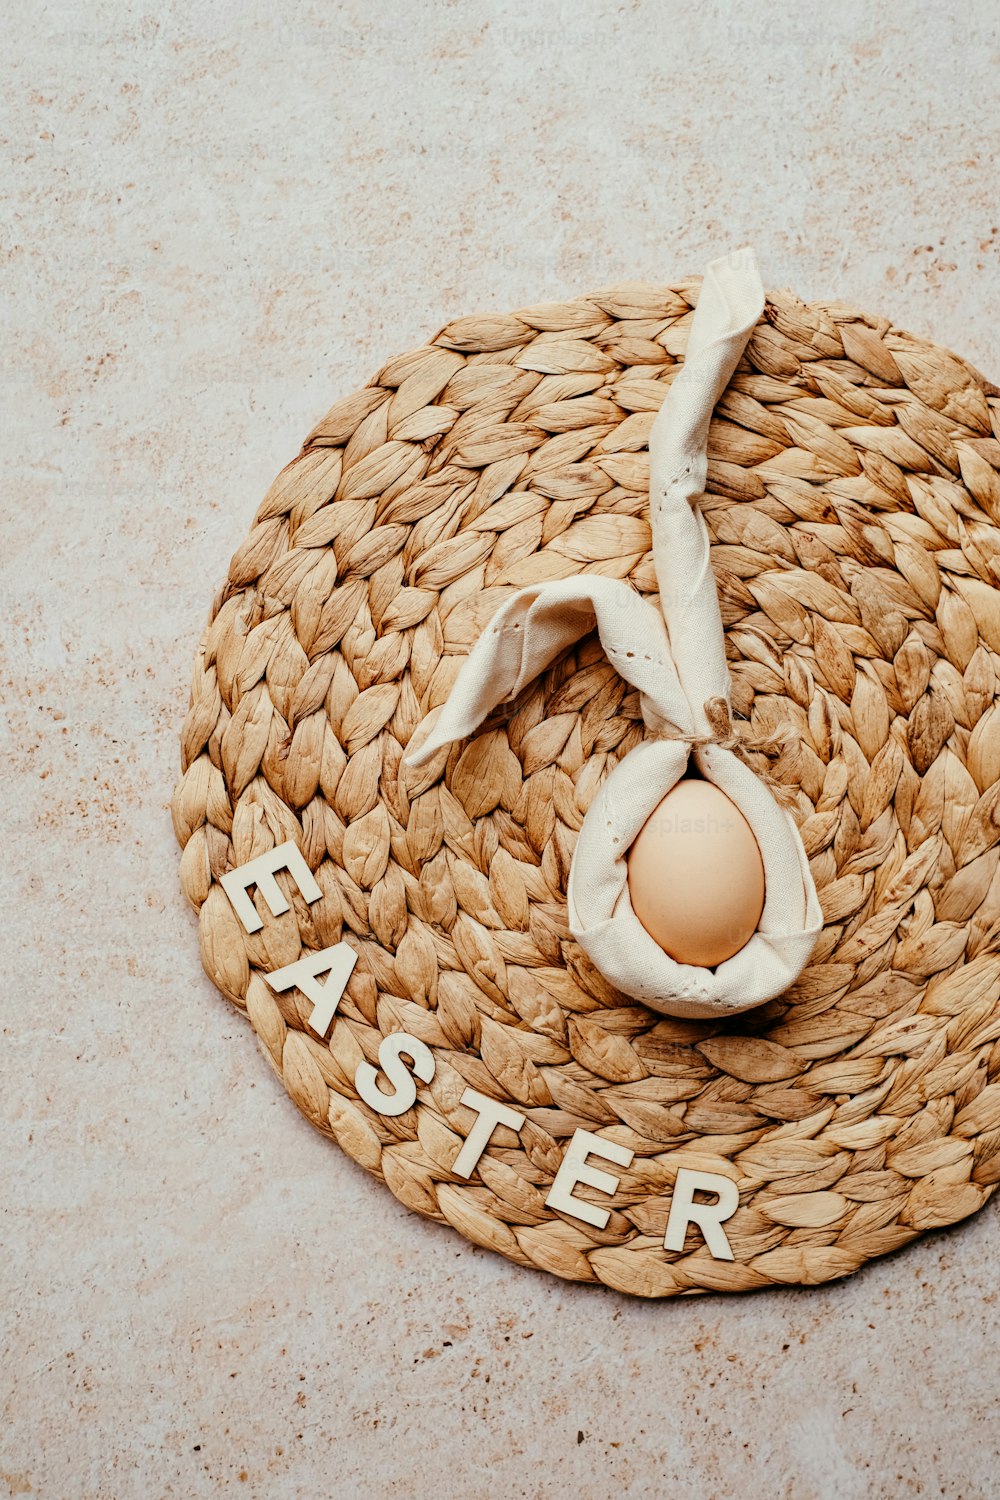 Una canasta con un huevo y la palabra Pascua escrita en ella